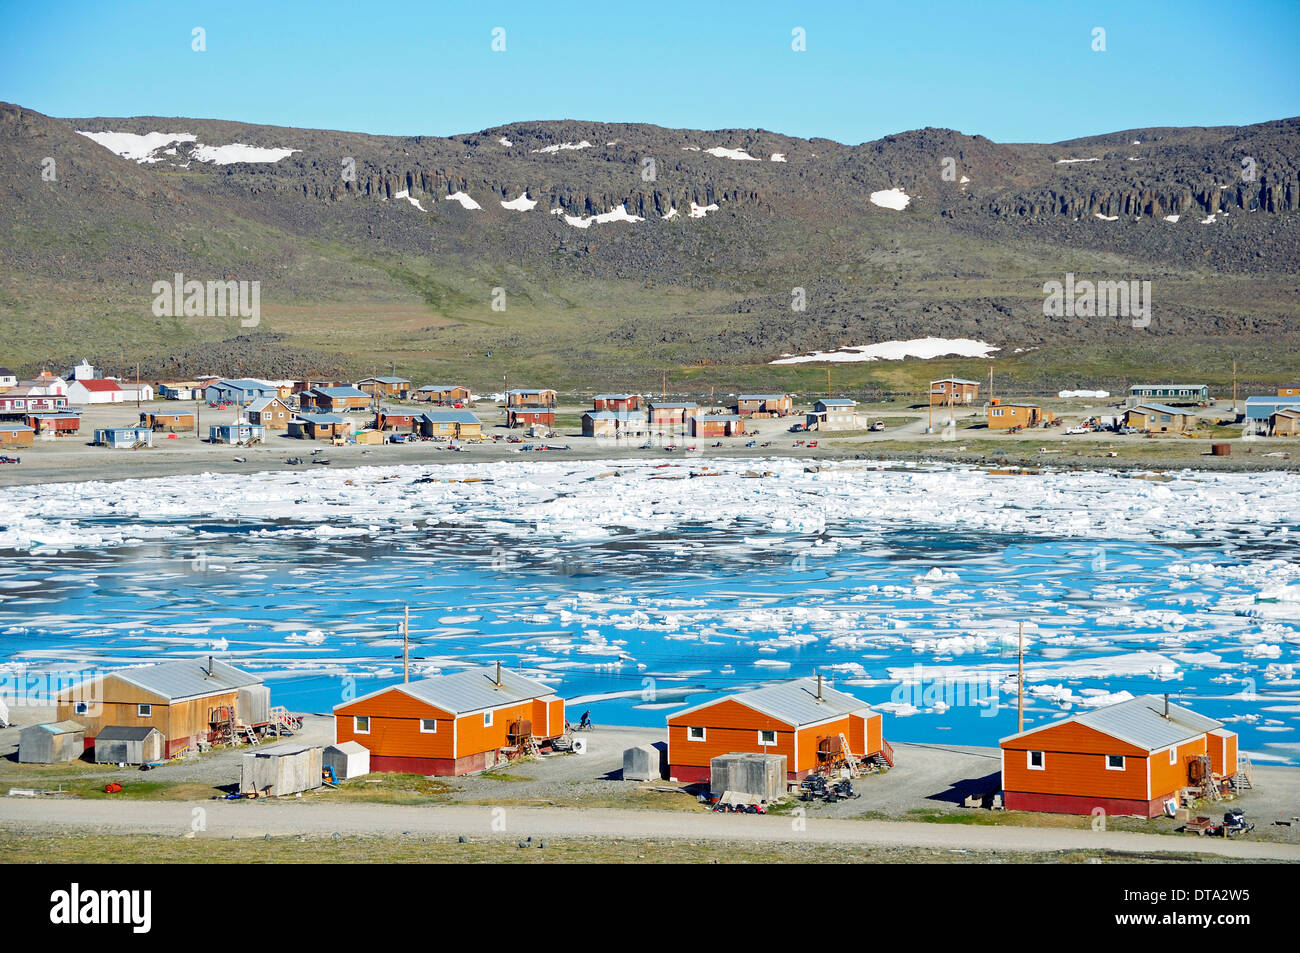 El pueblo Inuit de Ulukhaktok con témpanos de hielo en el Mar de Beaufort, el Océano Ártico, la Isla Victoria, antiguamente Holman Island Foto de stock